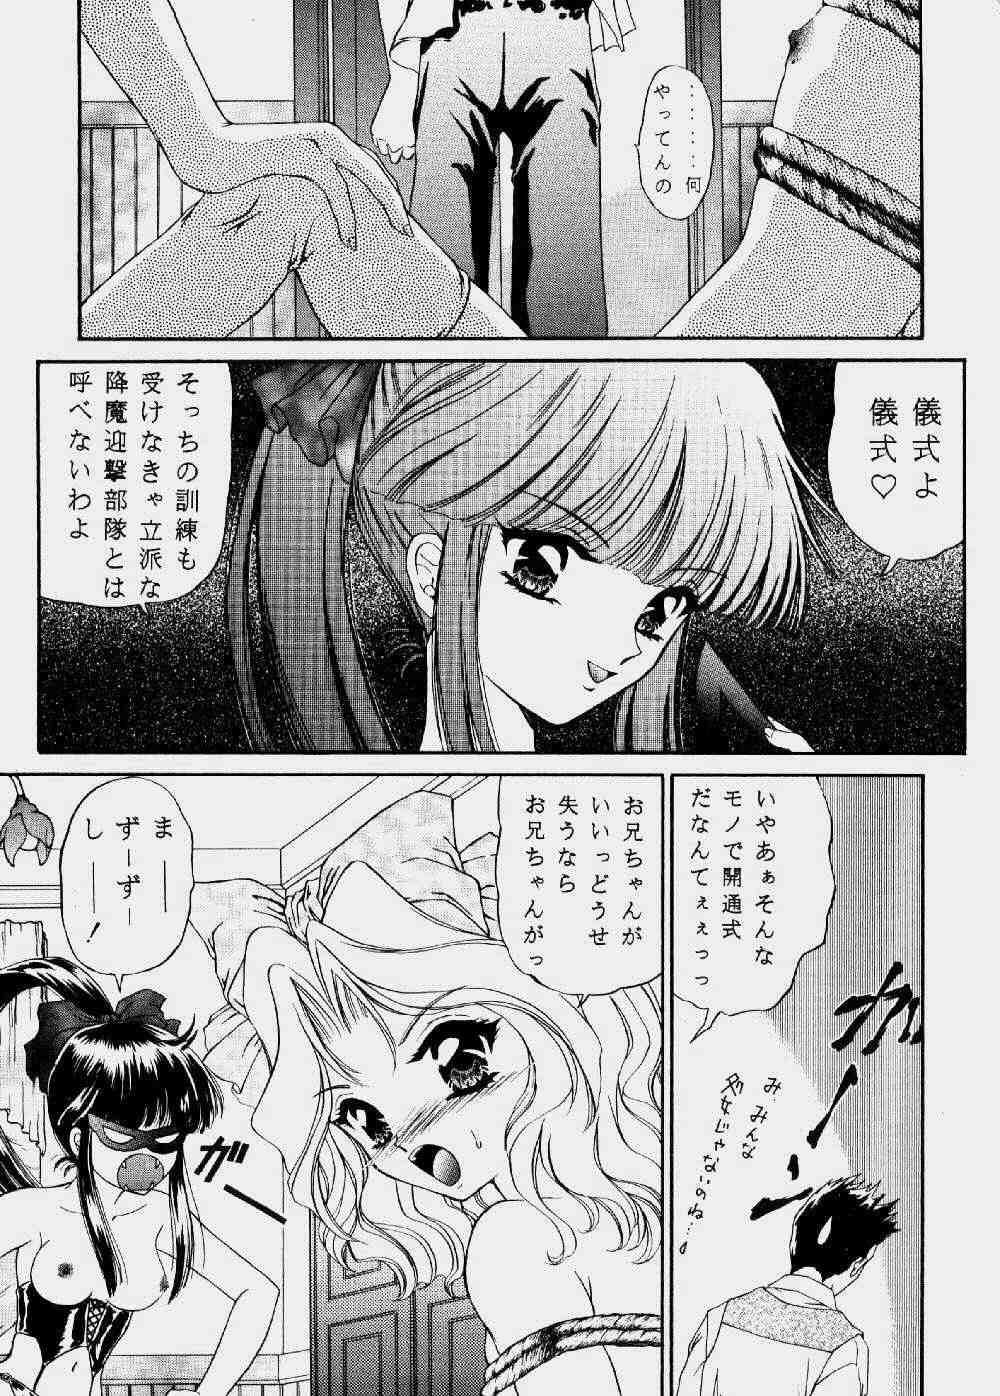 Lesbians Urano Mami Kojin-shi Vol.22 Shimensoka - Sakura taisen Gayhardcore - Page 7